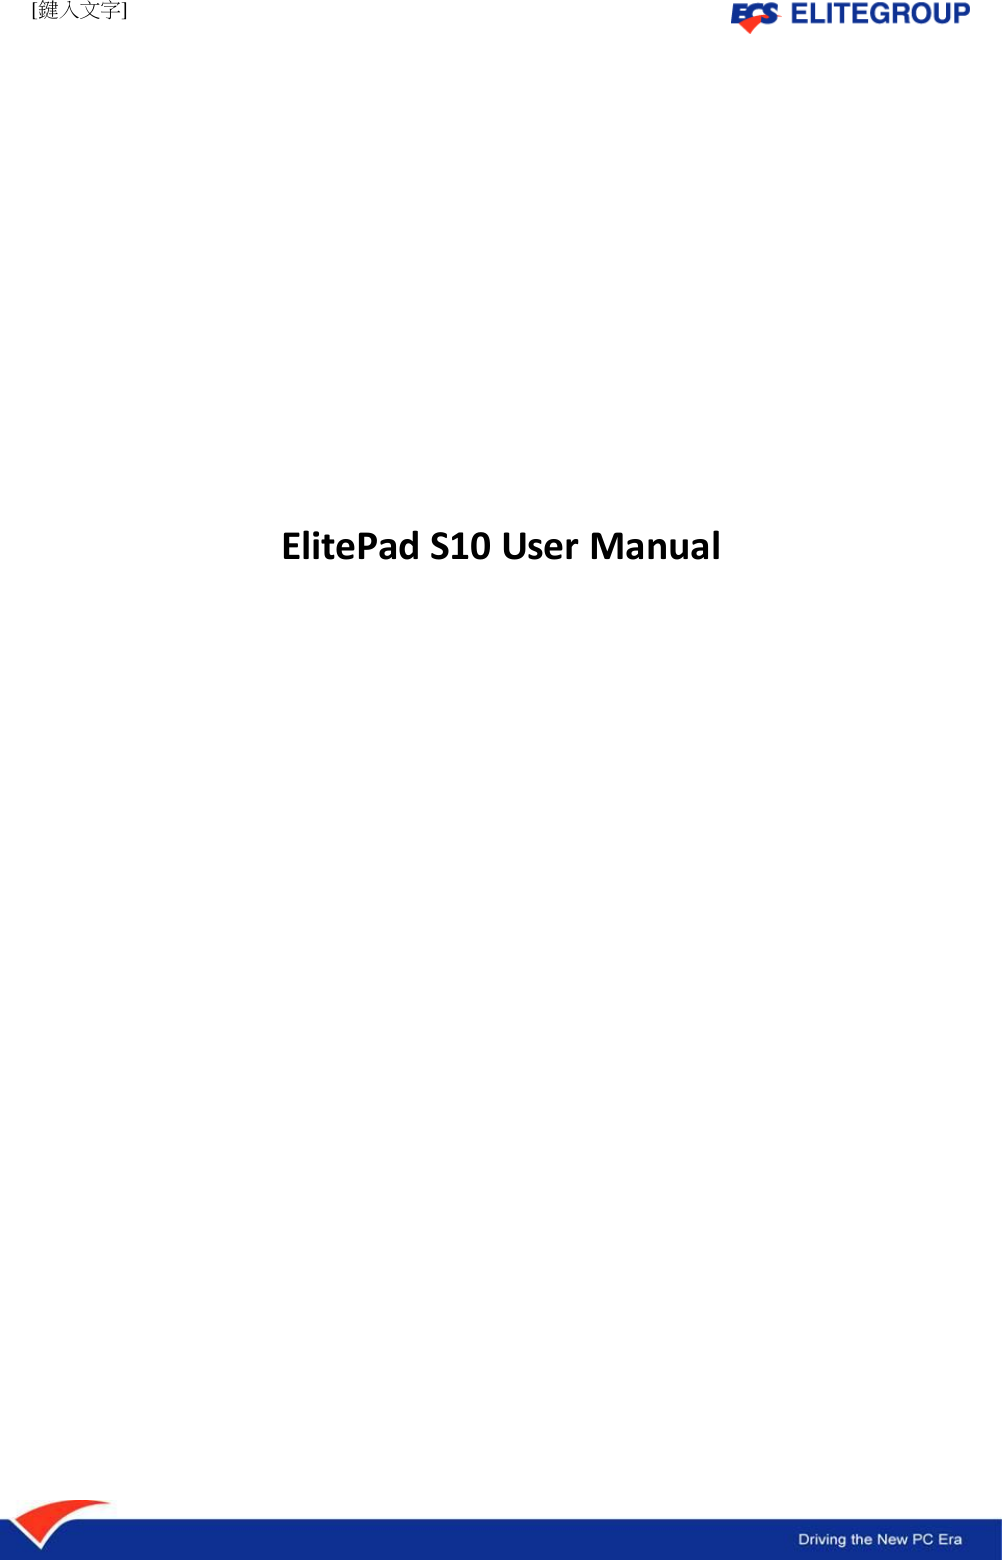 [鍵入文字]               ElitePad S10 User Manual                     